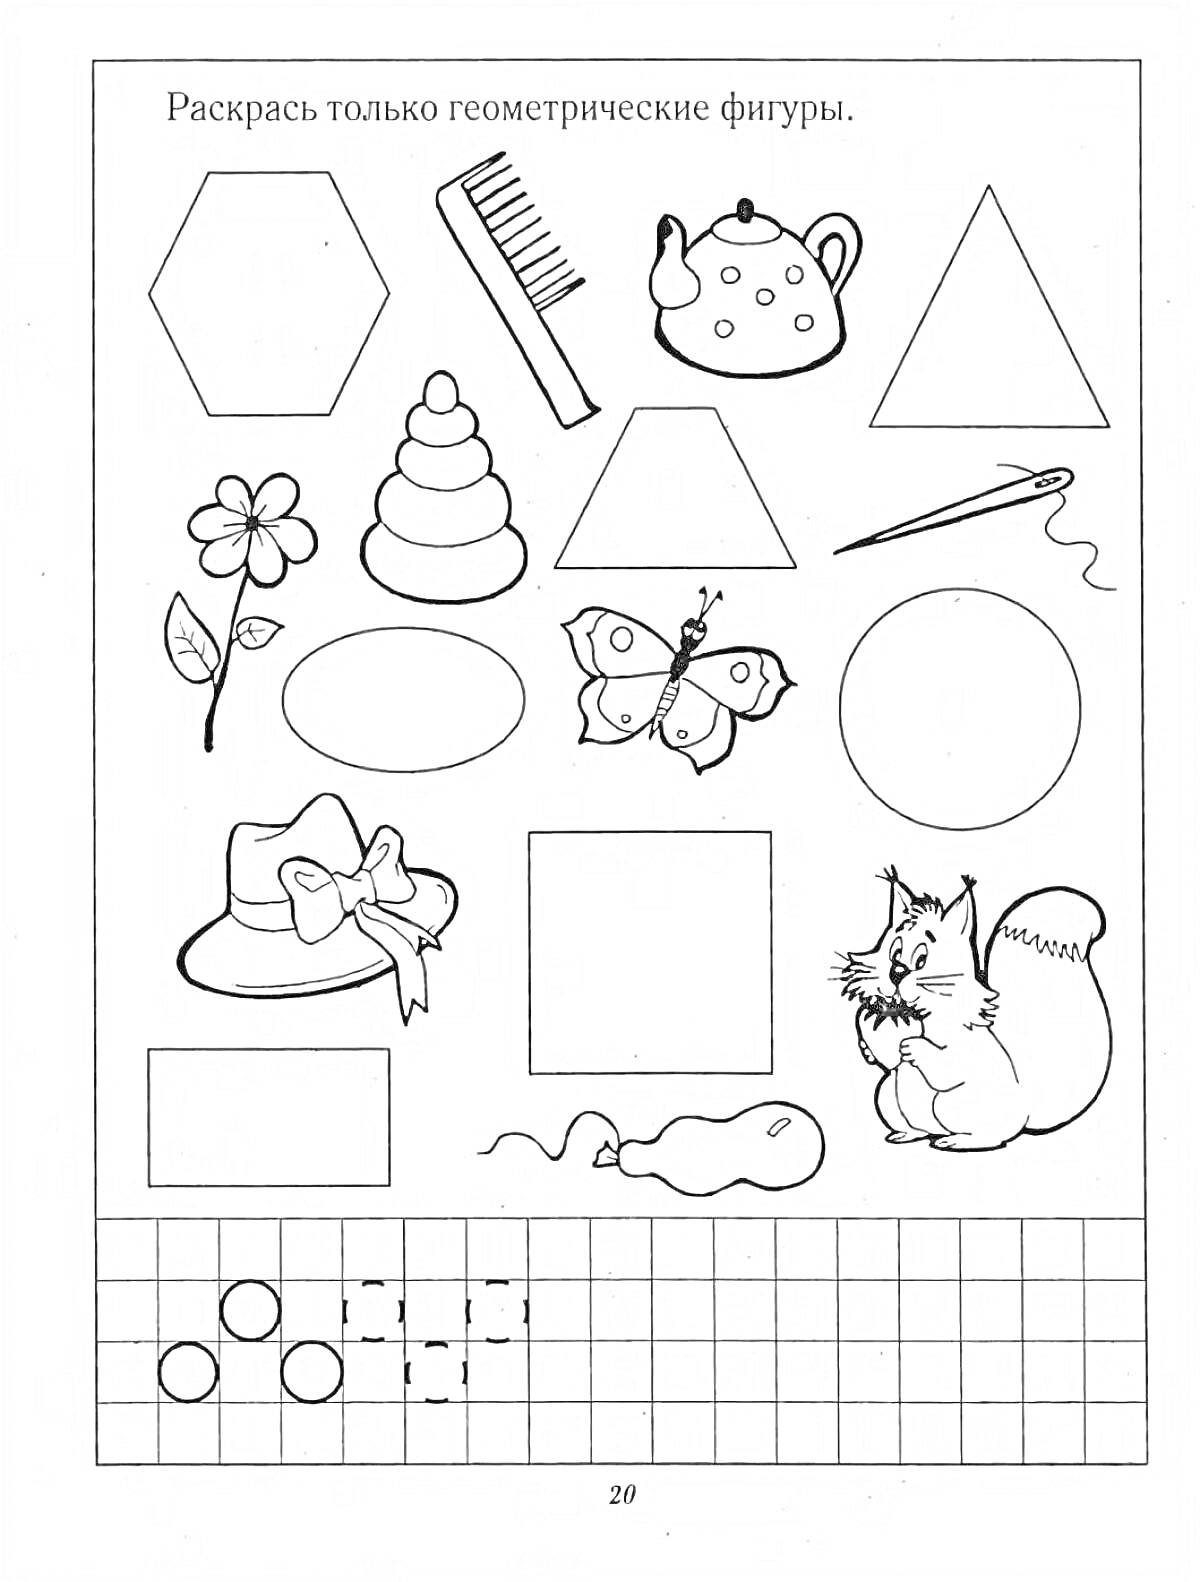 Раскраска Геометрические фигуры и предметы (шестиугольник, расчёска, чайник, треугольник, цветок, пирамида, прямоугольник, бабочка, круг, шляпа, квадрат, иголка с ниткой, лента, лошадка, белка, круги в сетке)